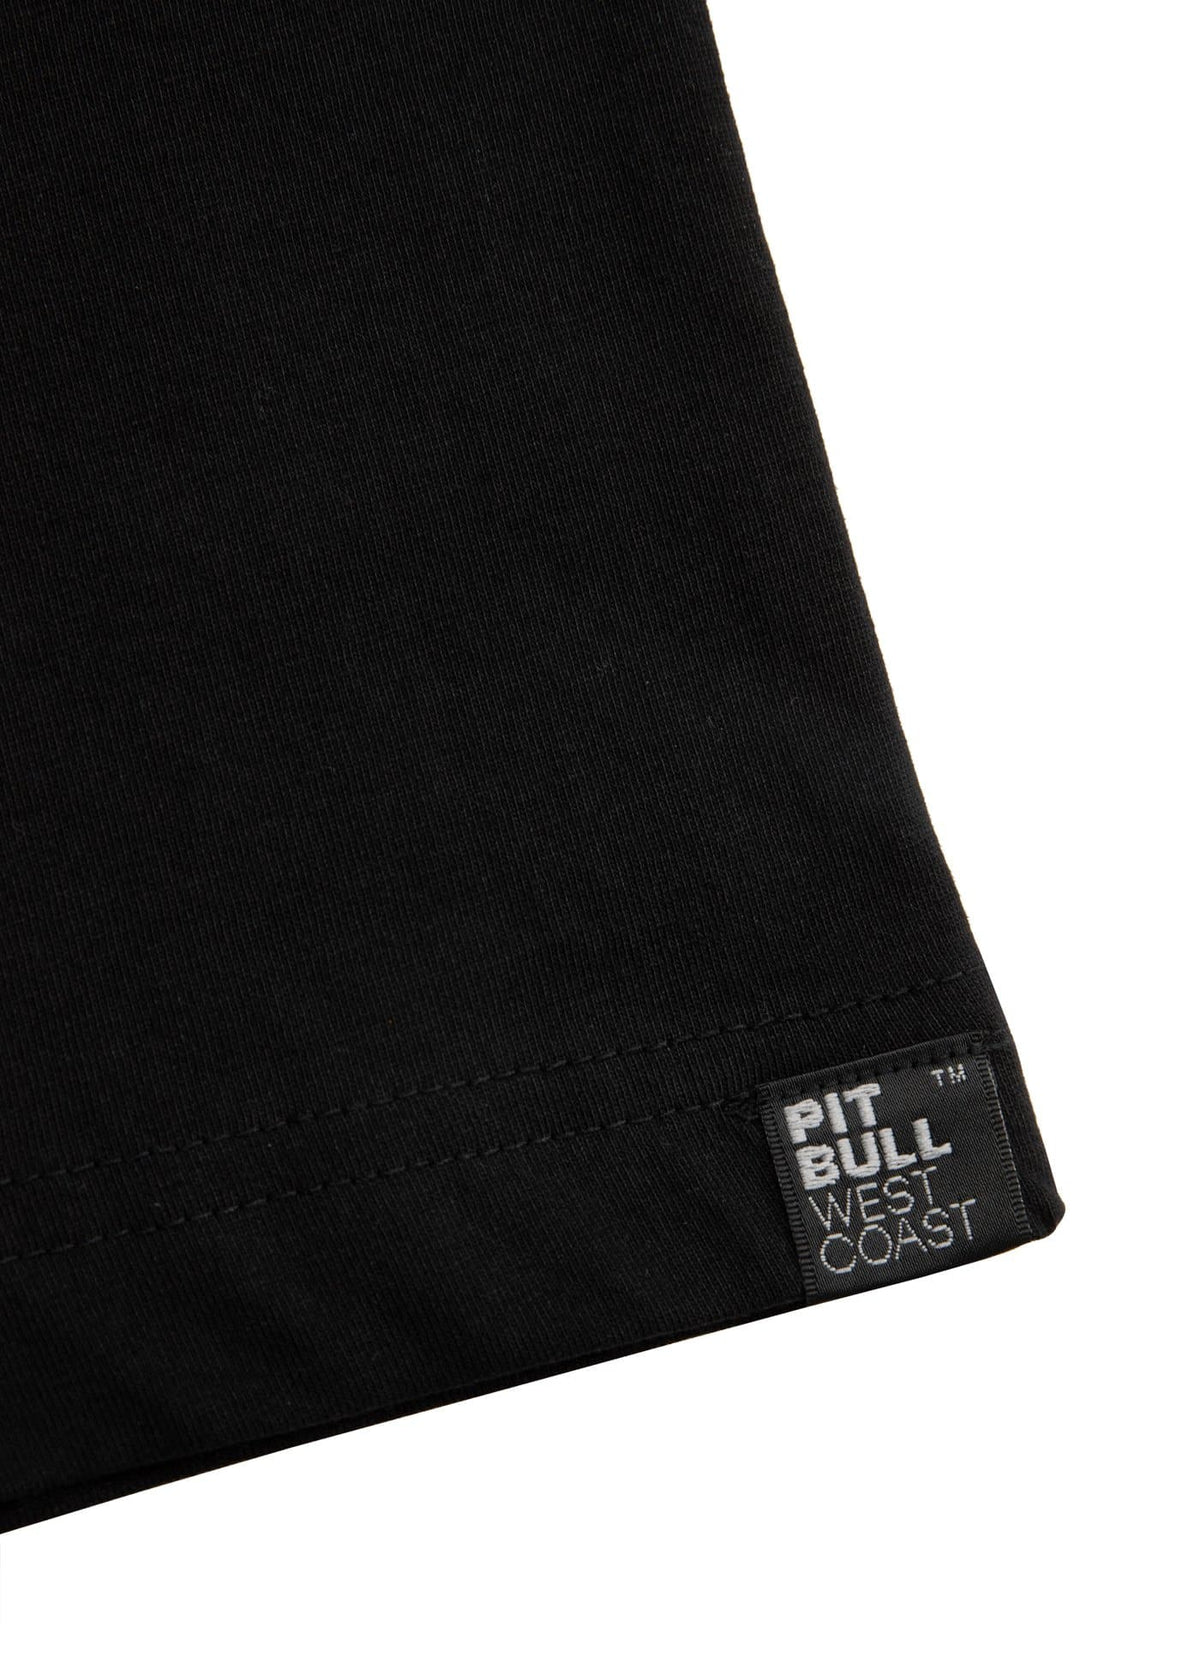 T-shirt BANE Black - pitbullwestcoast